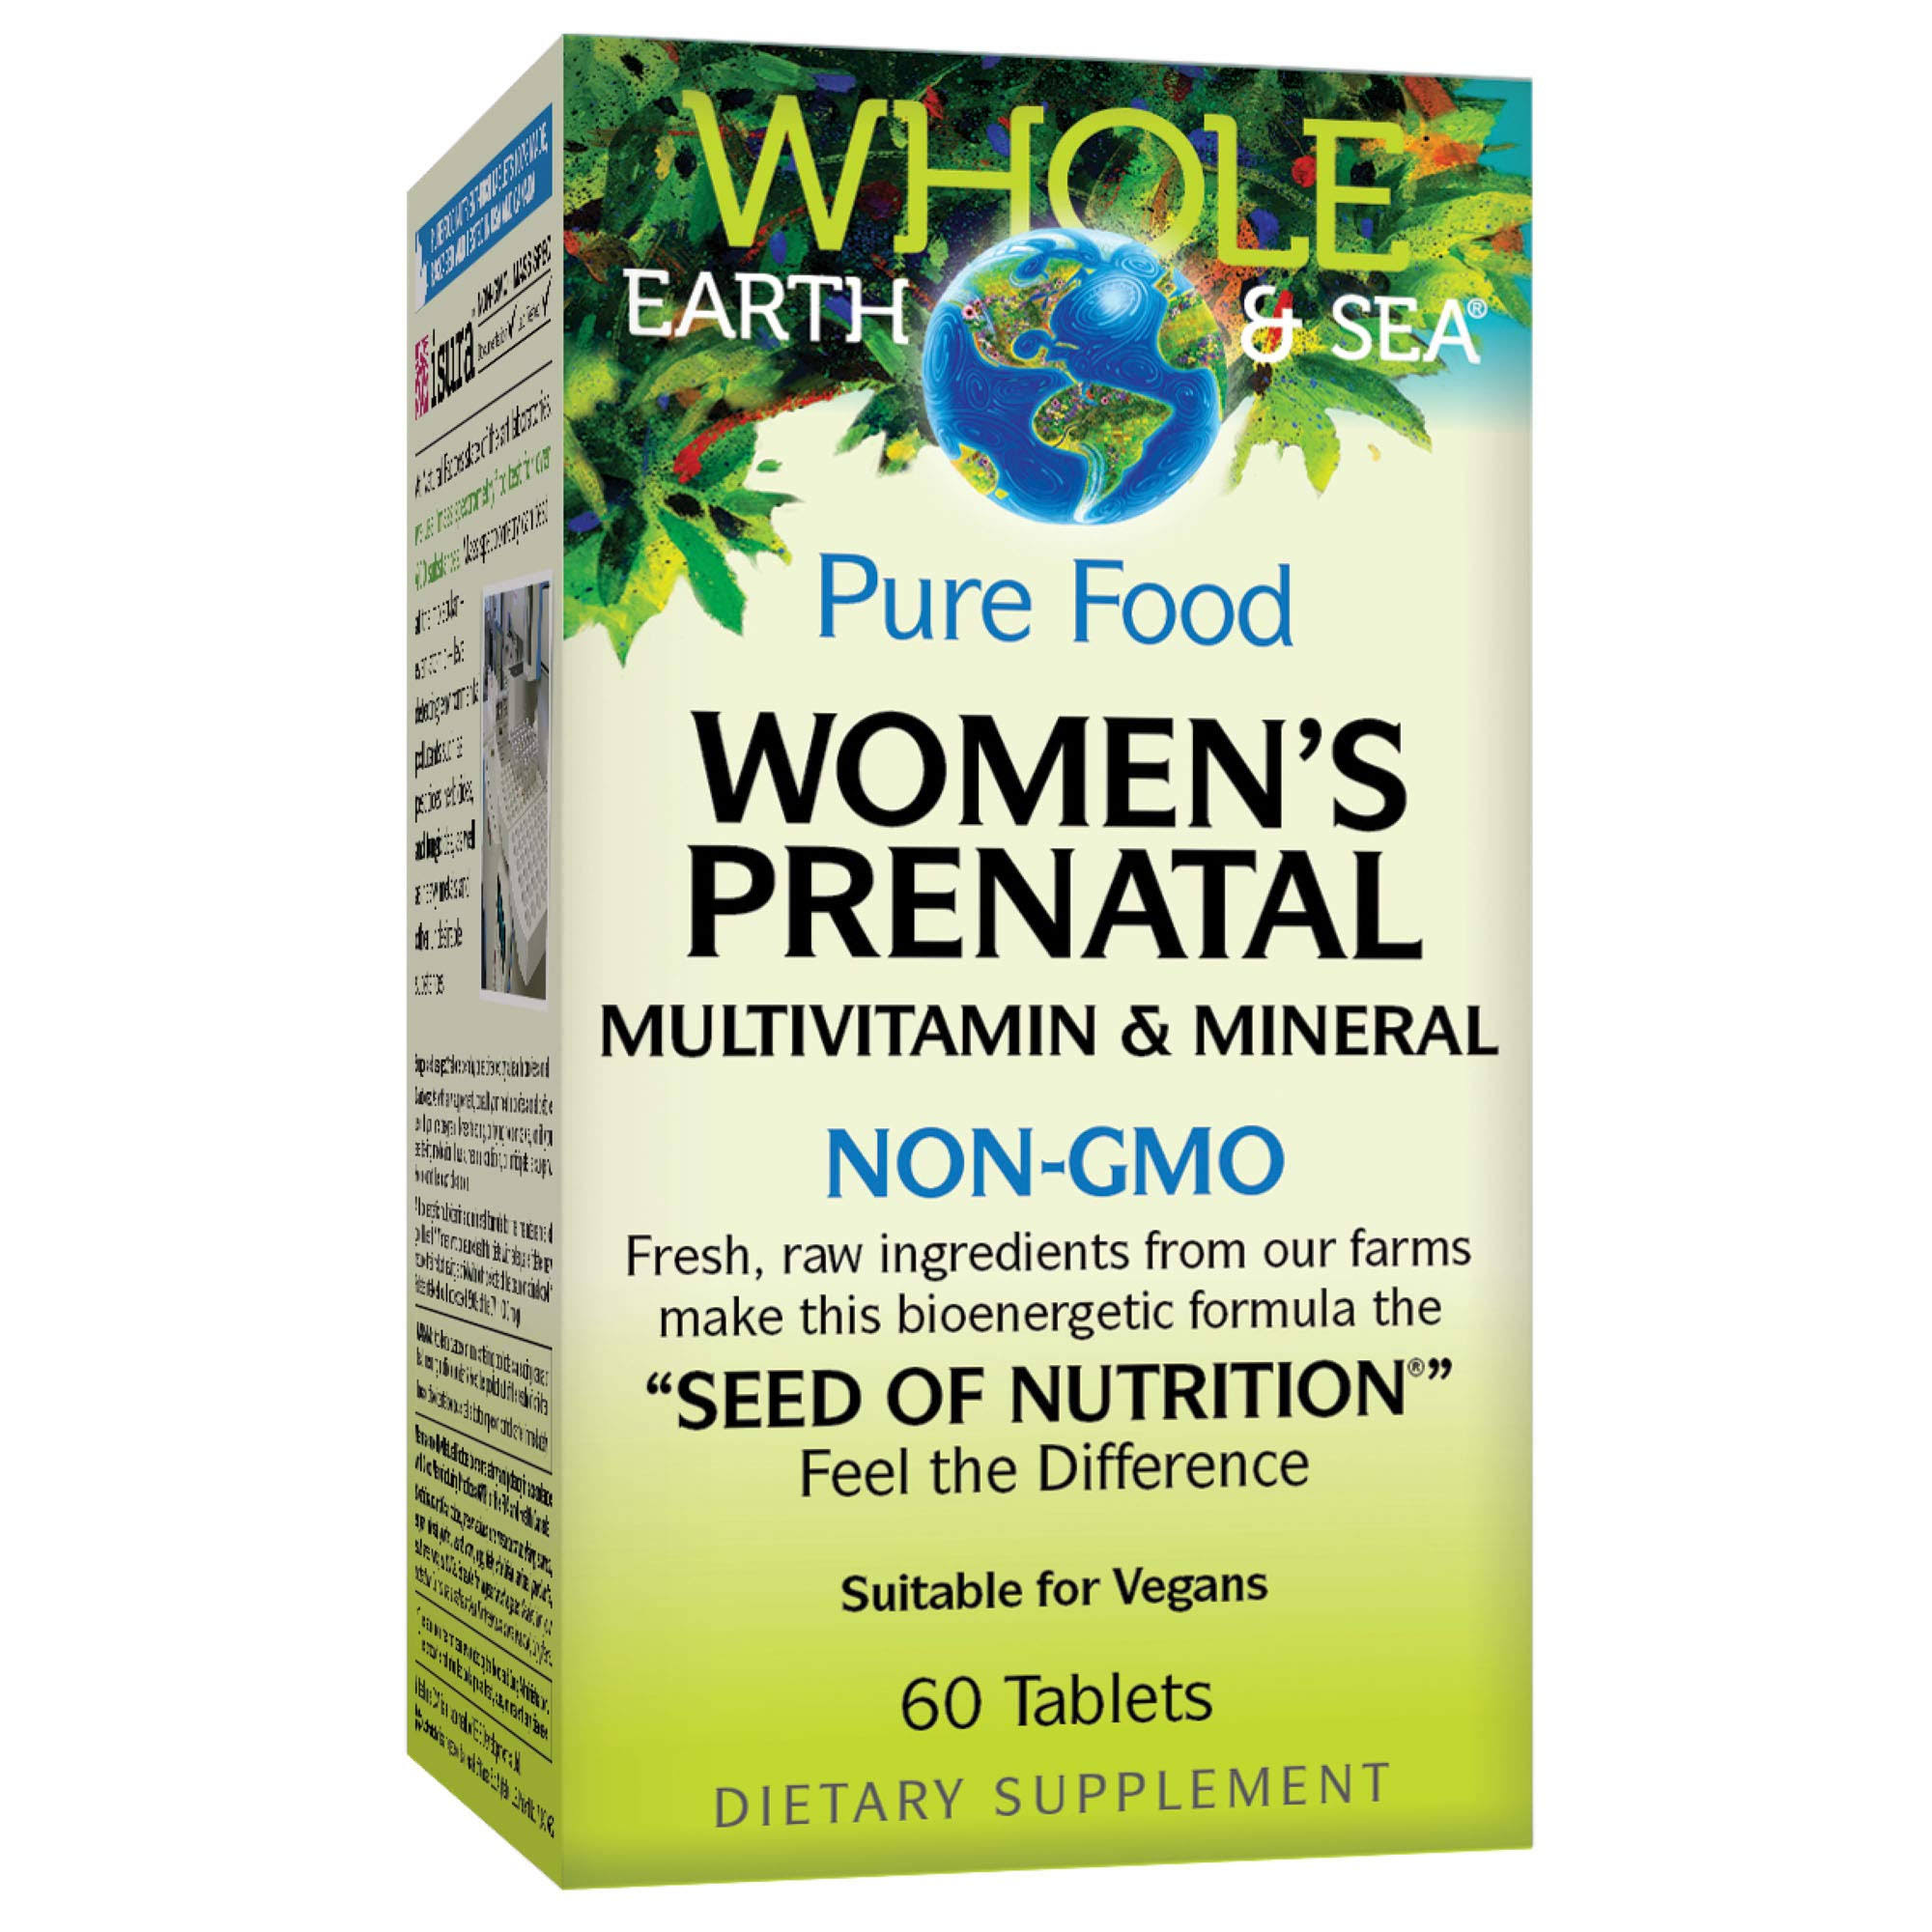 Whole Earth & Sea Pure Food Women's Prenatal Multivitamin & Mineral 60 Tablets